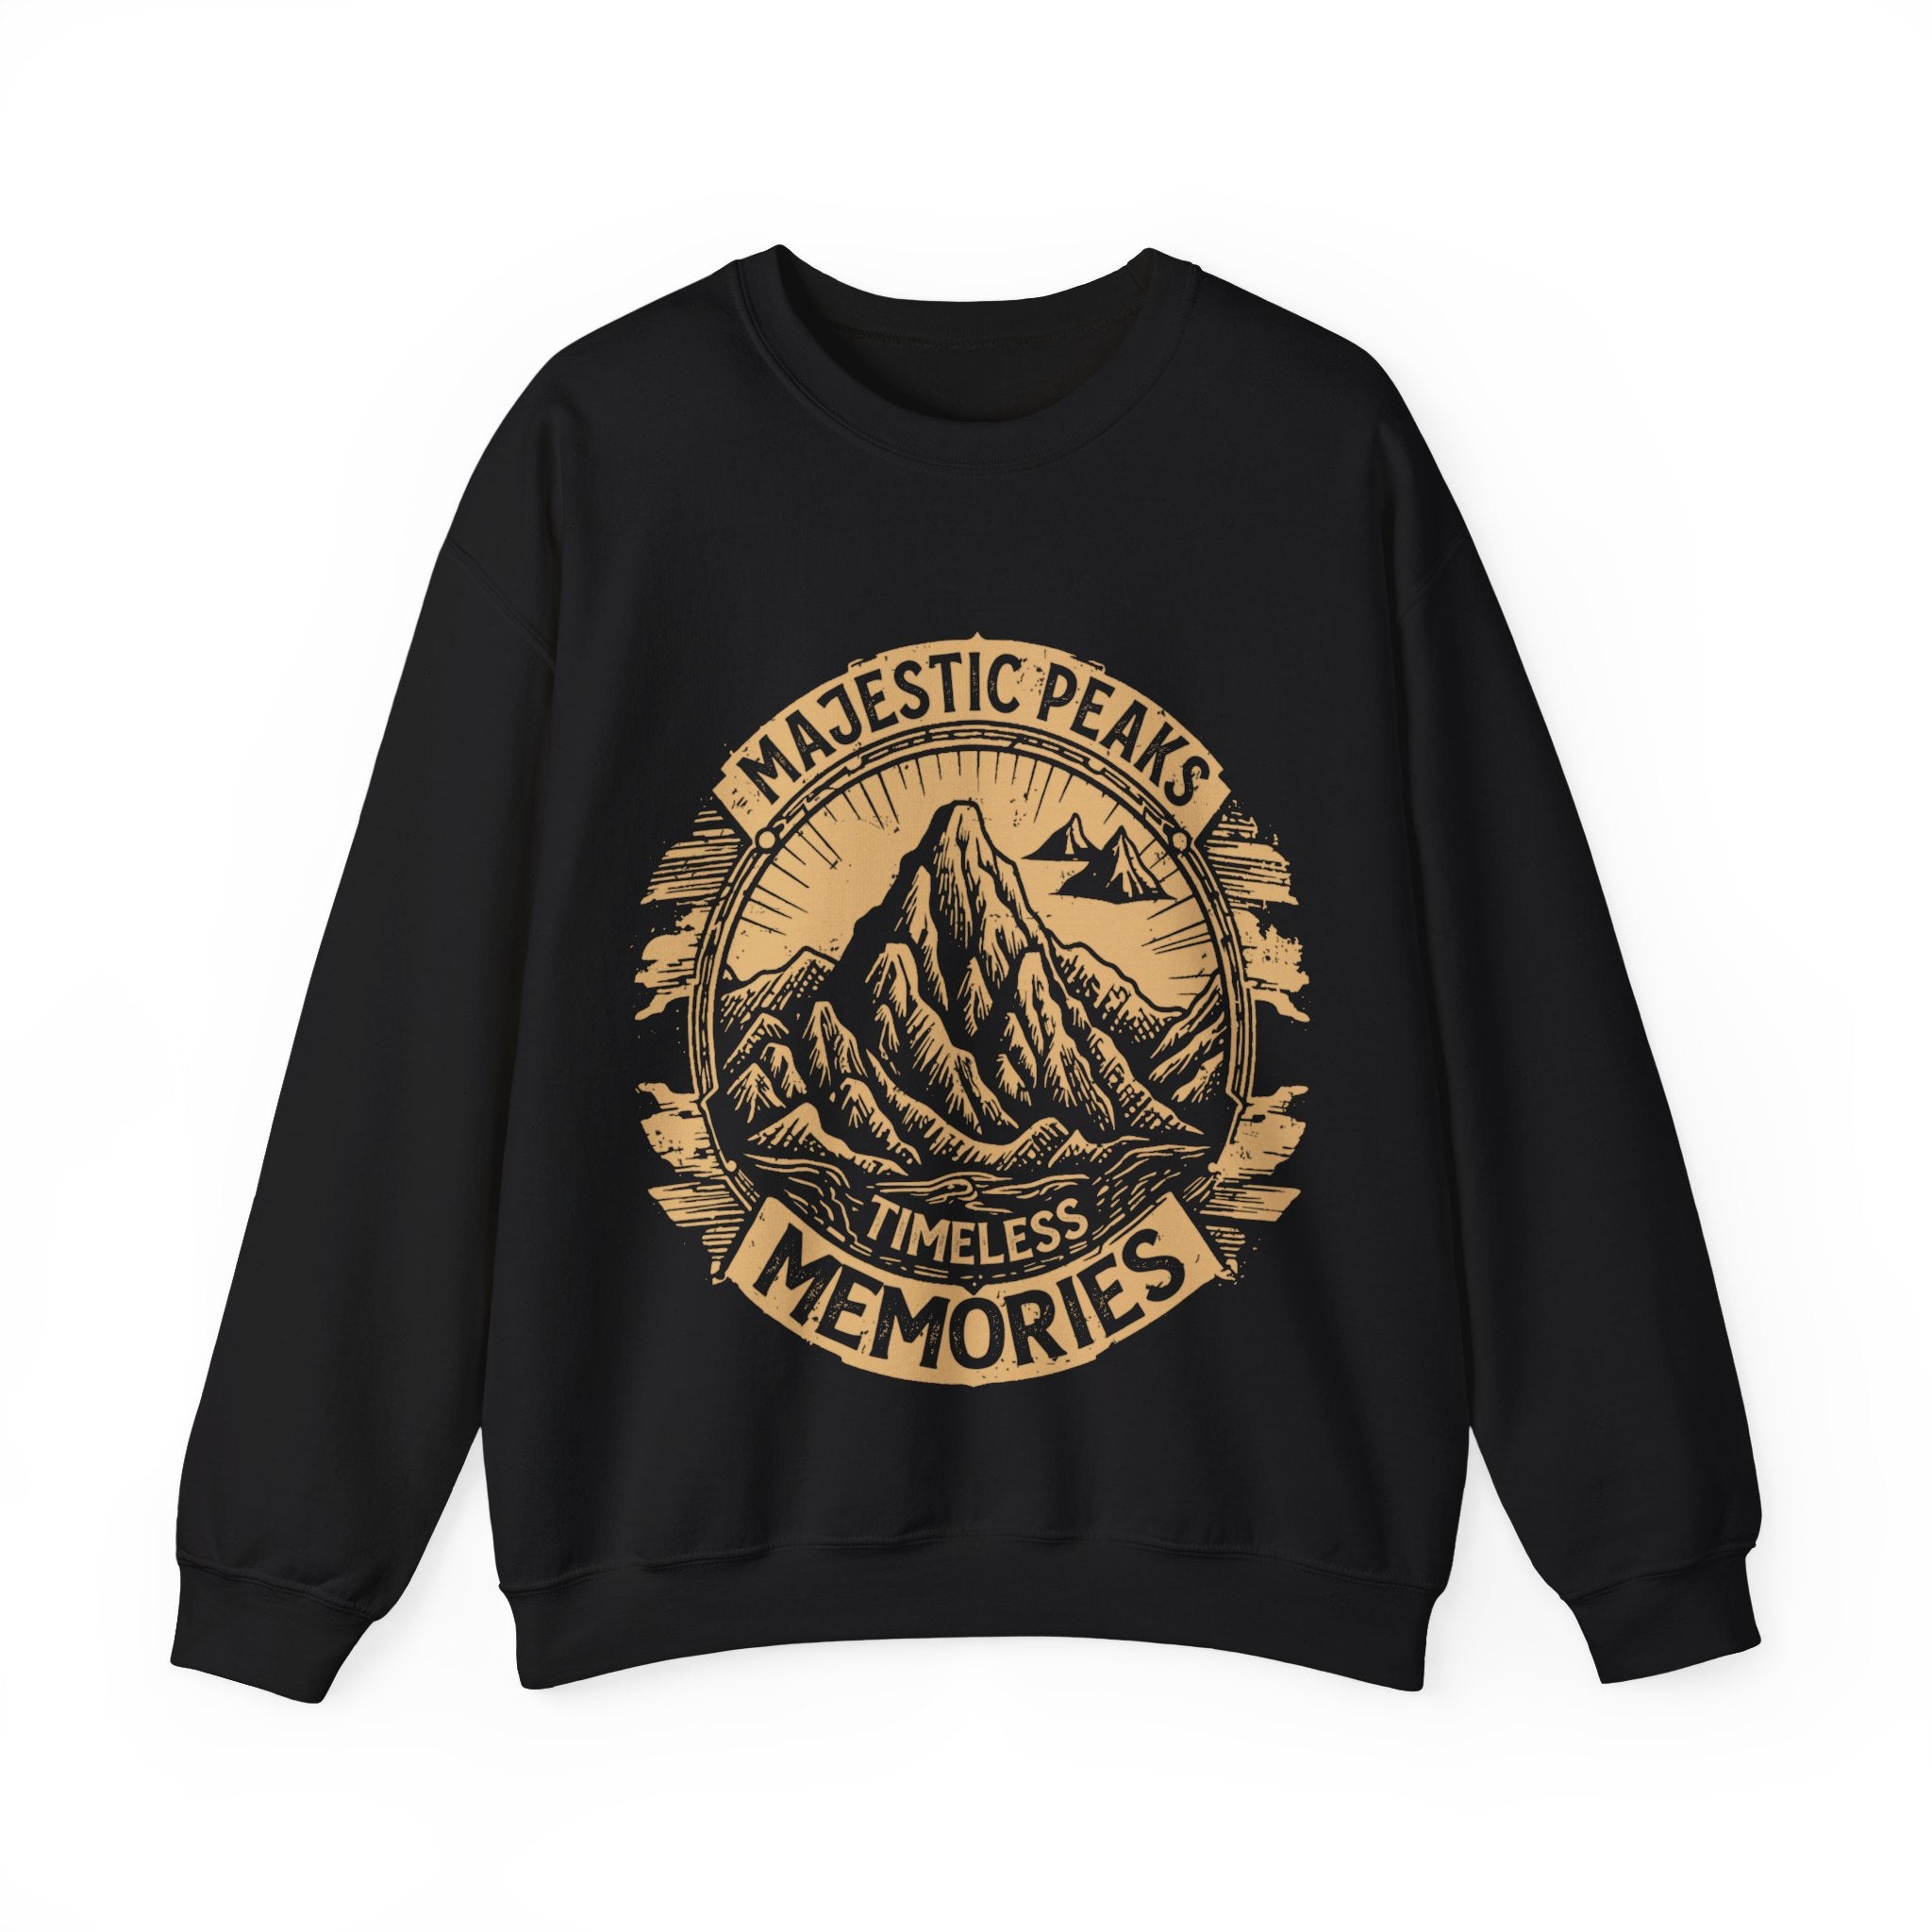 Women's "Majestic Peaks" Vintage Sweatshirt